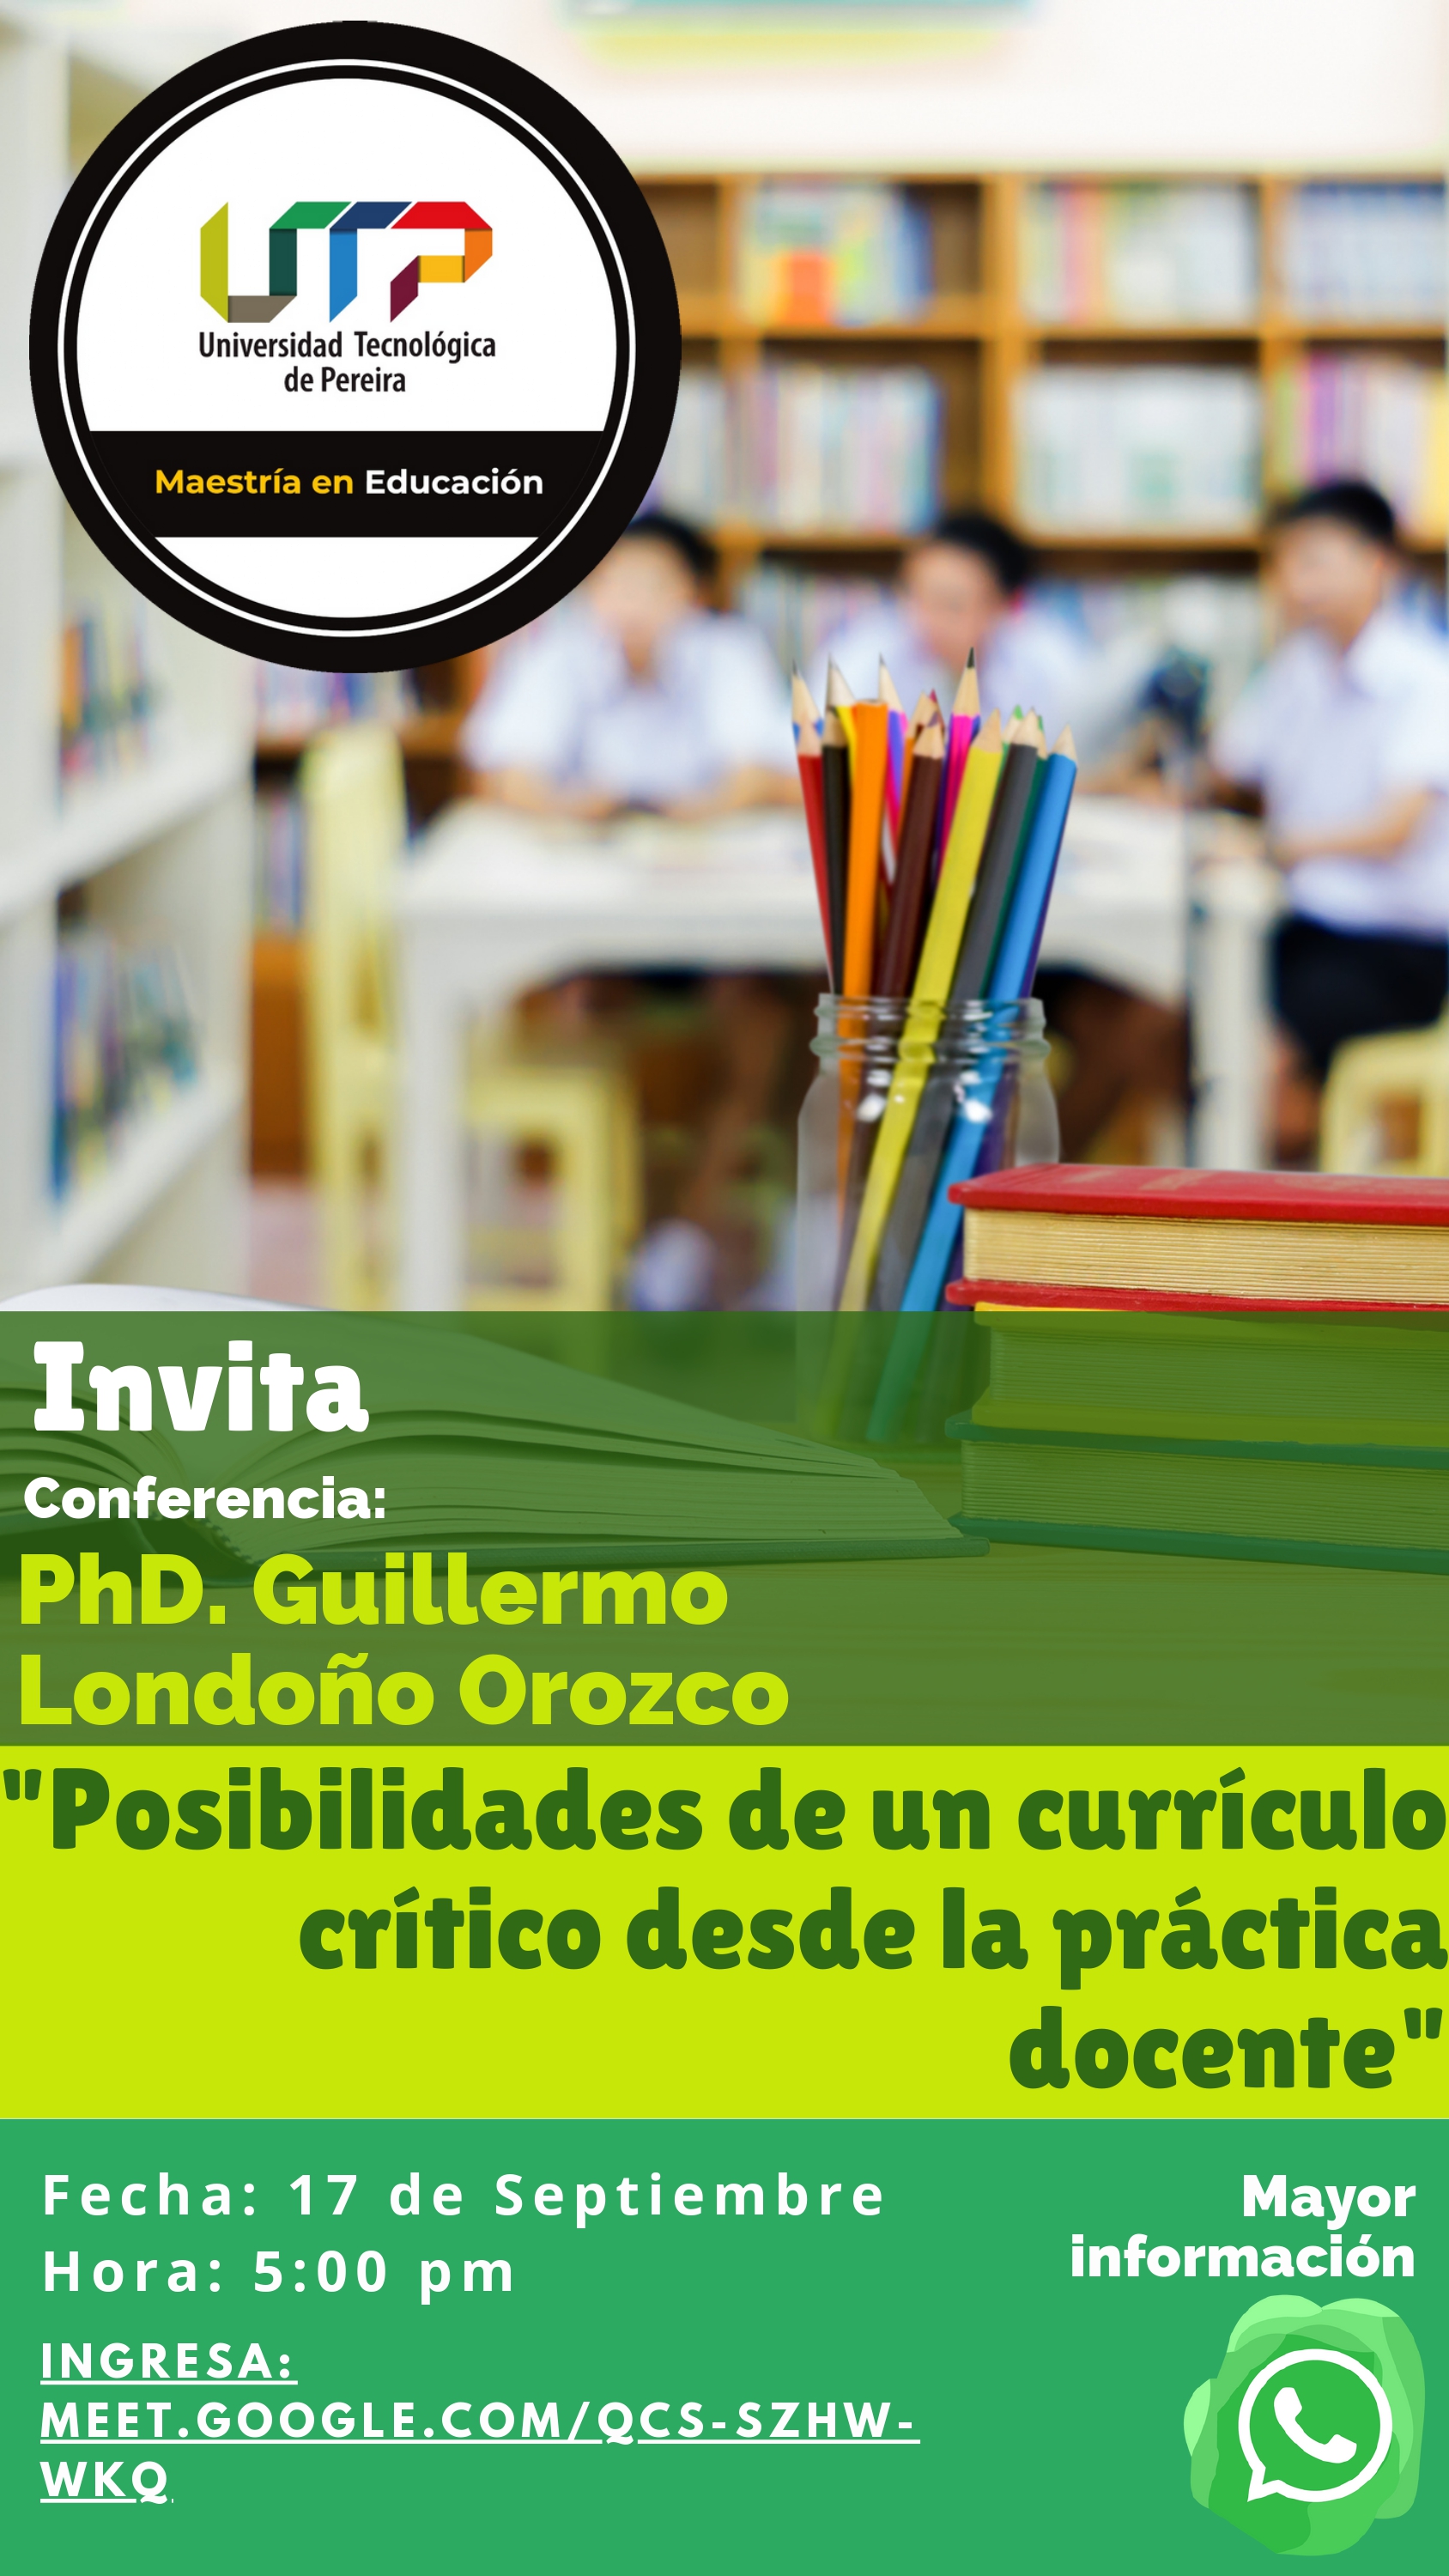 Conferencia “Posibilidades de un currículo crítico desde la práctica docente”